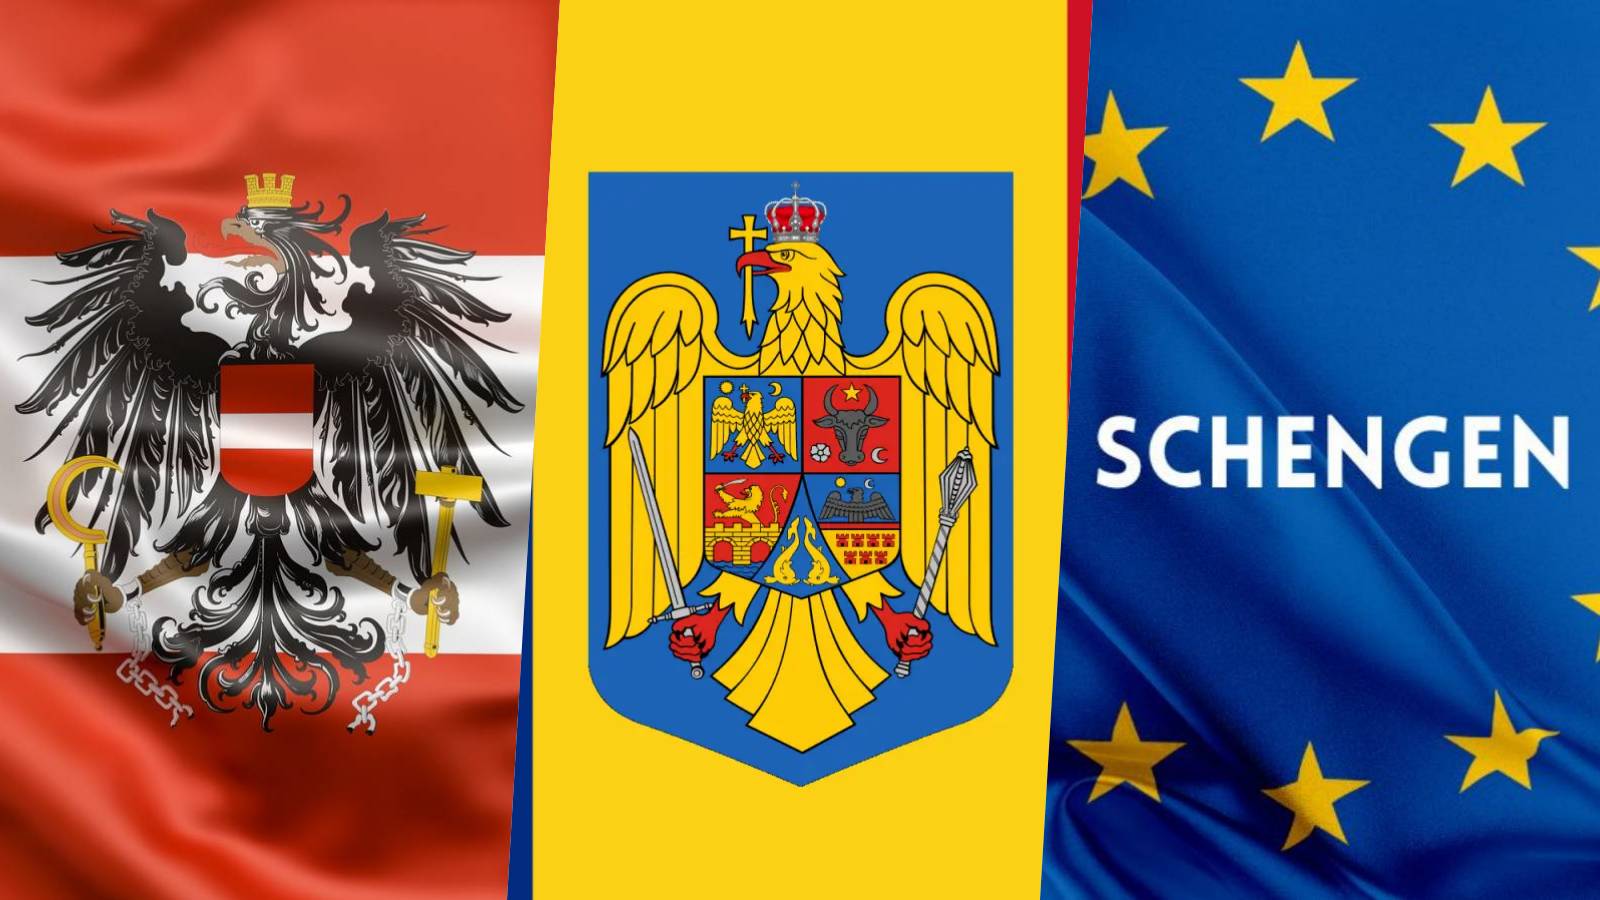 Austria Anuntul Oficial DEZAMAGITOR ULTIM MOMENT Legat Finalizarea Aderarii Romaniei Schengen